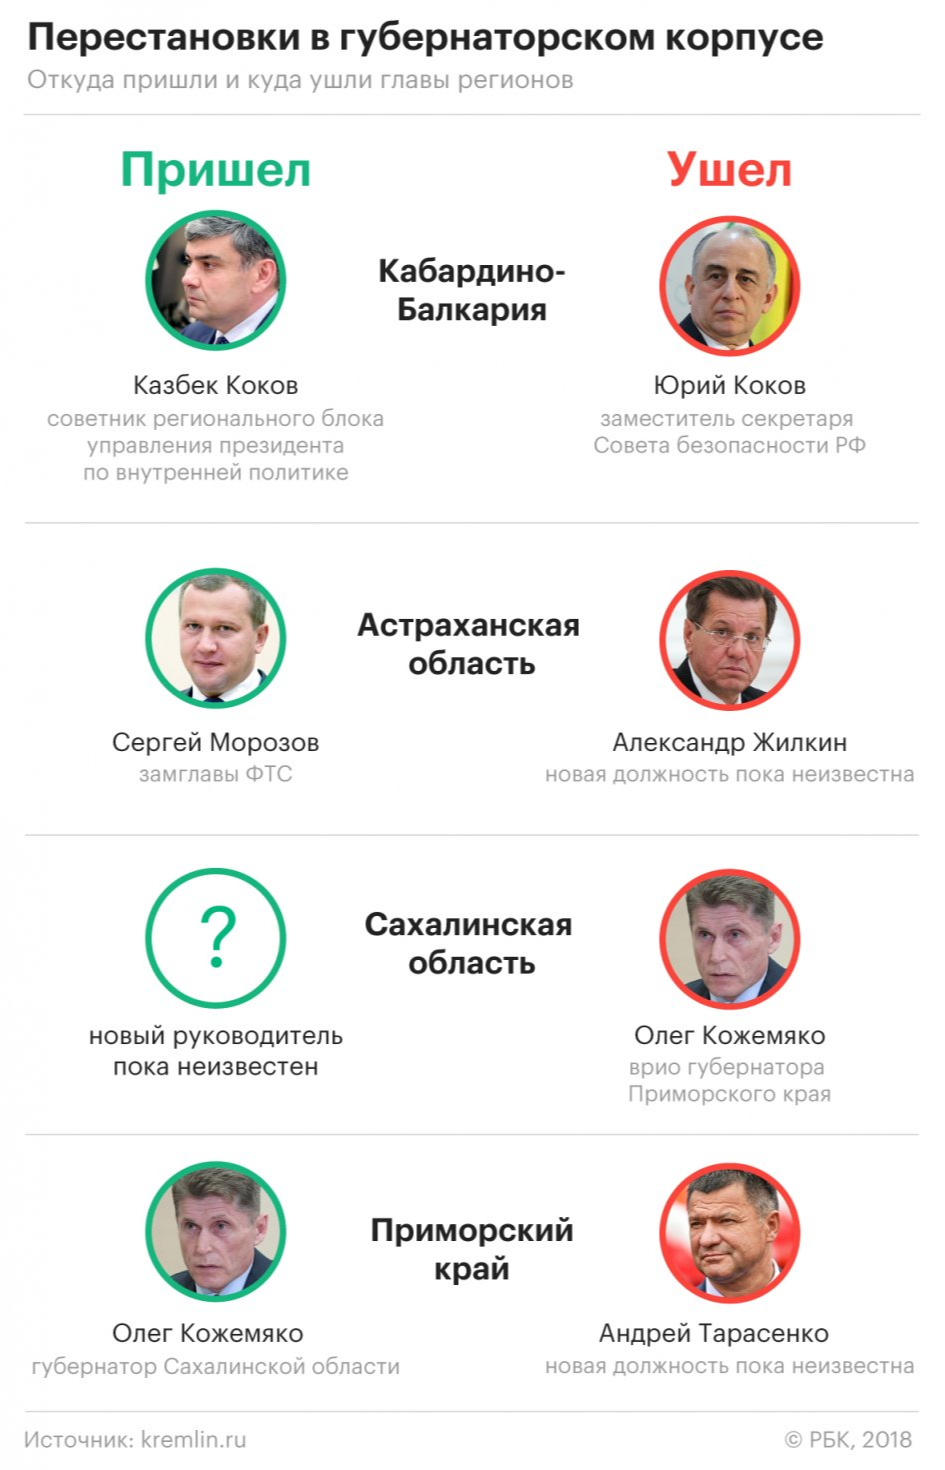 Единоросс Кожемяко пойдет на выборы губернатора Приморья самовыдвиженцем